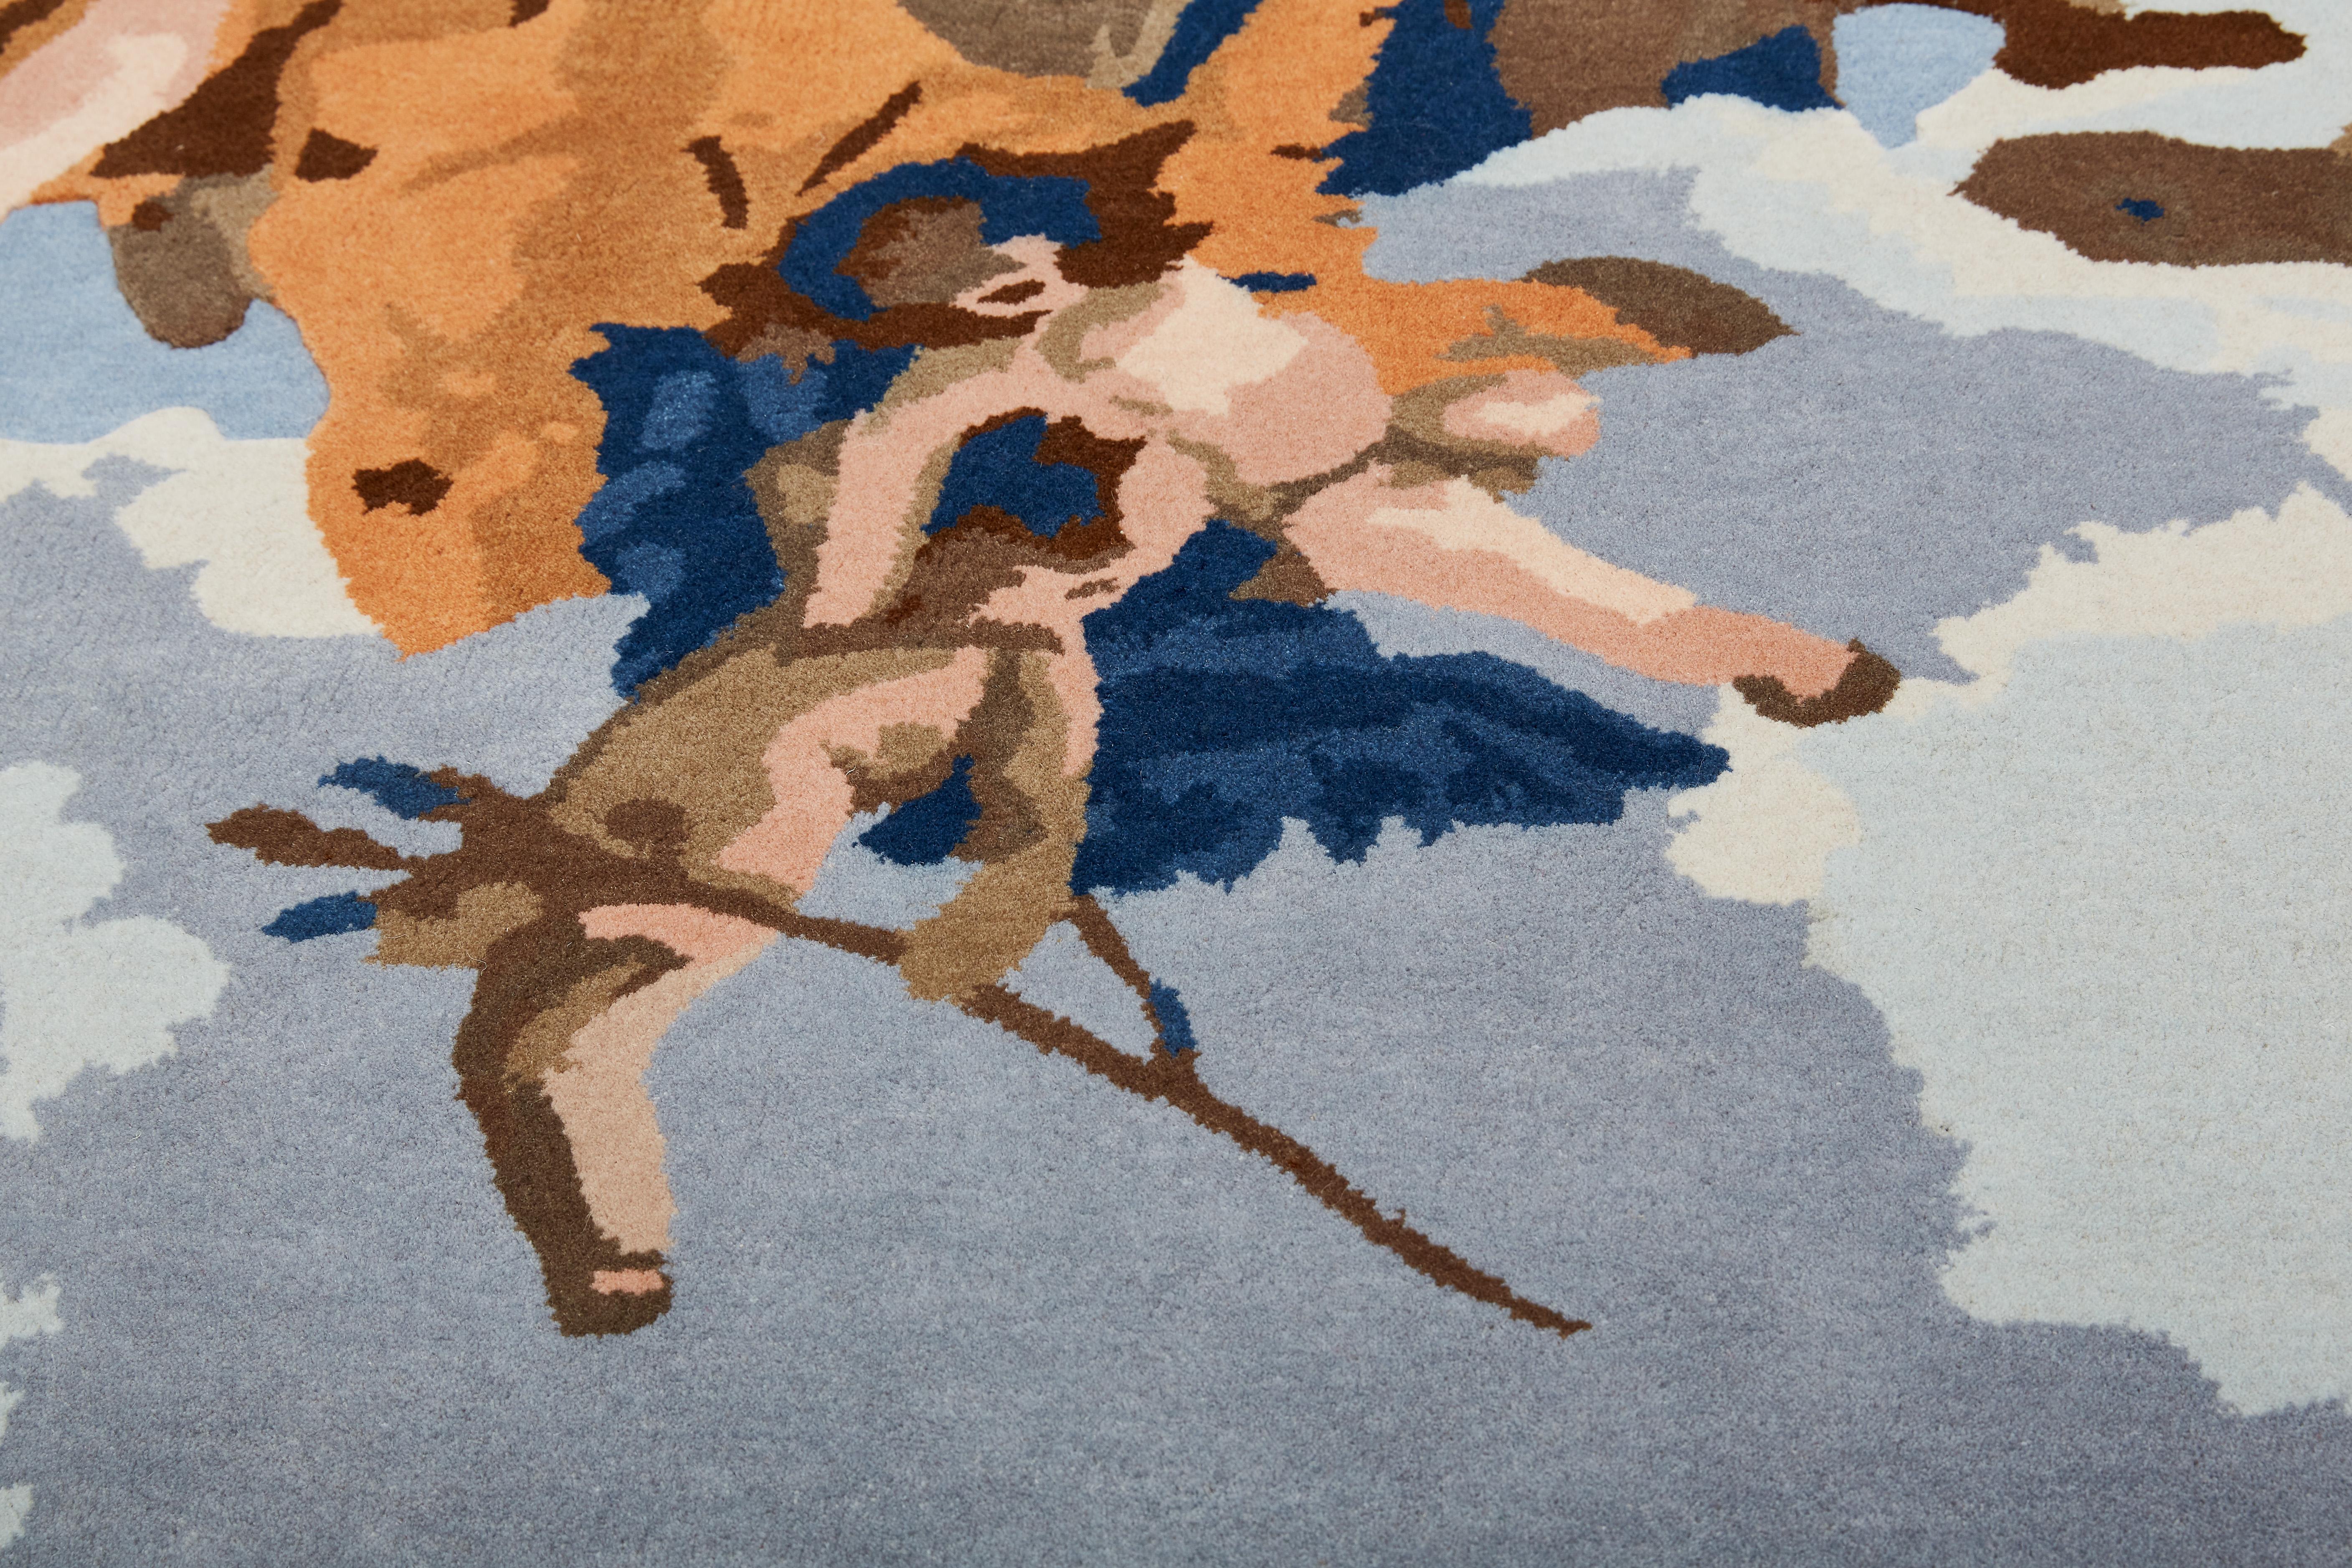 Ce tapis captivant conçu par Alessandra Baldereschi est un hommage artistique au peintre vénitien du XVIIIe siècle Giambattista Tiepolo, réinterprétant son Gloria d'Angeli avec une touche de modernité. Le profil ondulé reflète le cadre original du